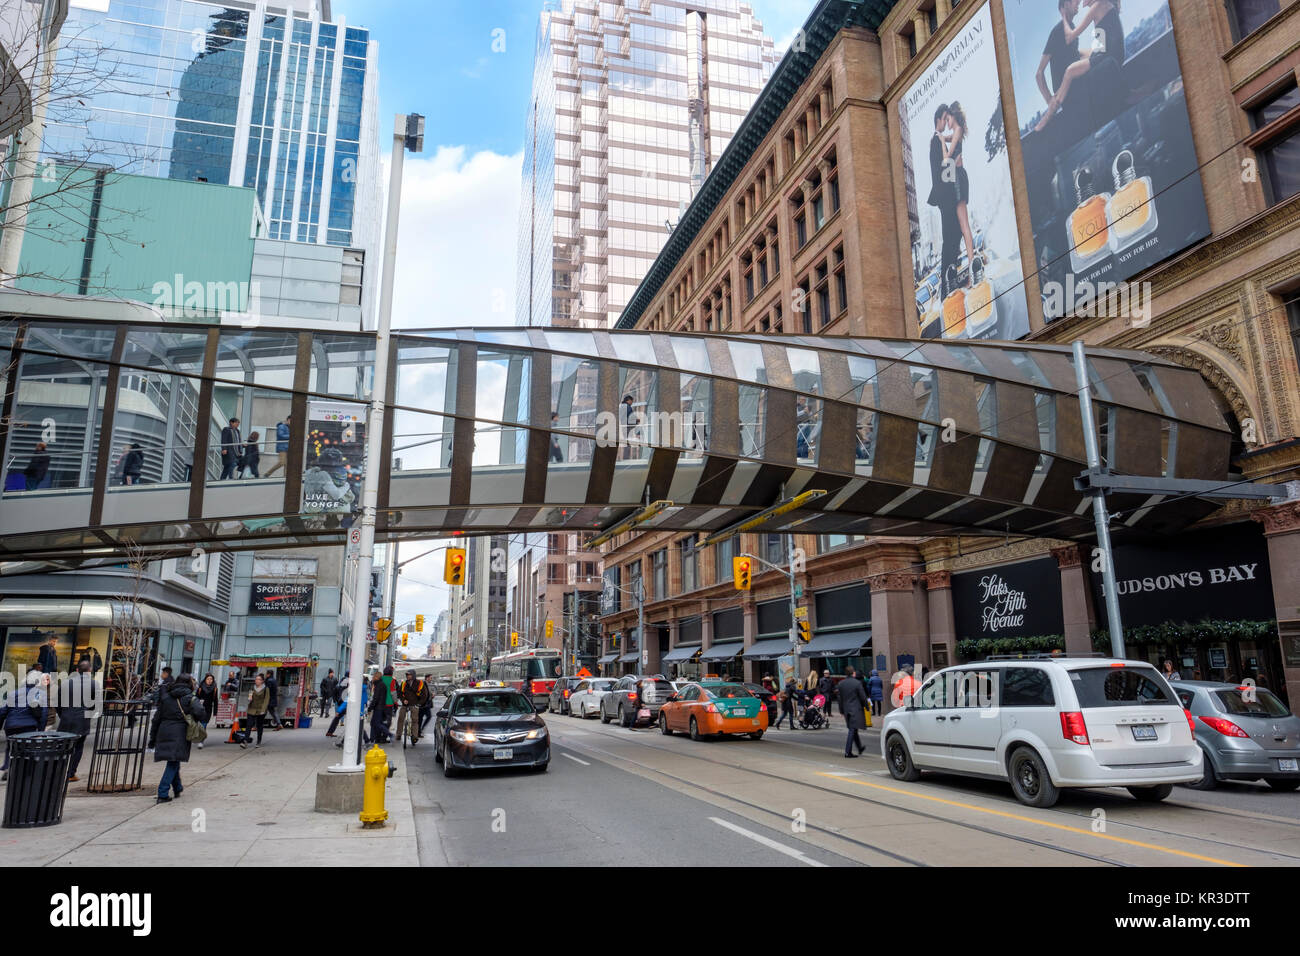 Une passerelle pour piétons surélevé, reliant Toronto Eaton Centre shopping center et Saks Fifth Avenue Toronto store, rue Queen Ouest, Canada. Banque D'Images